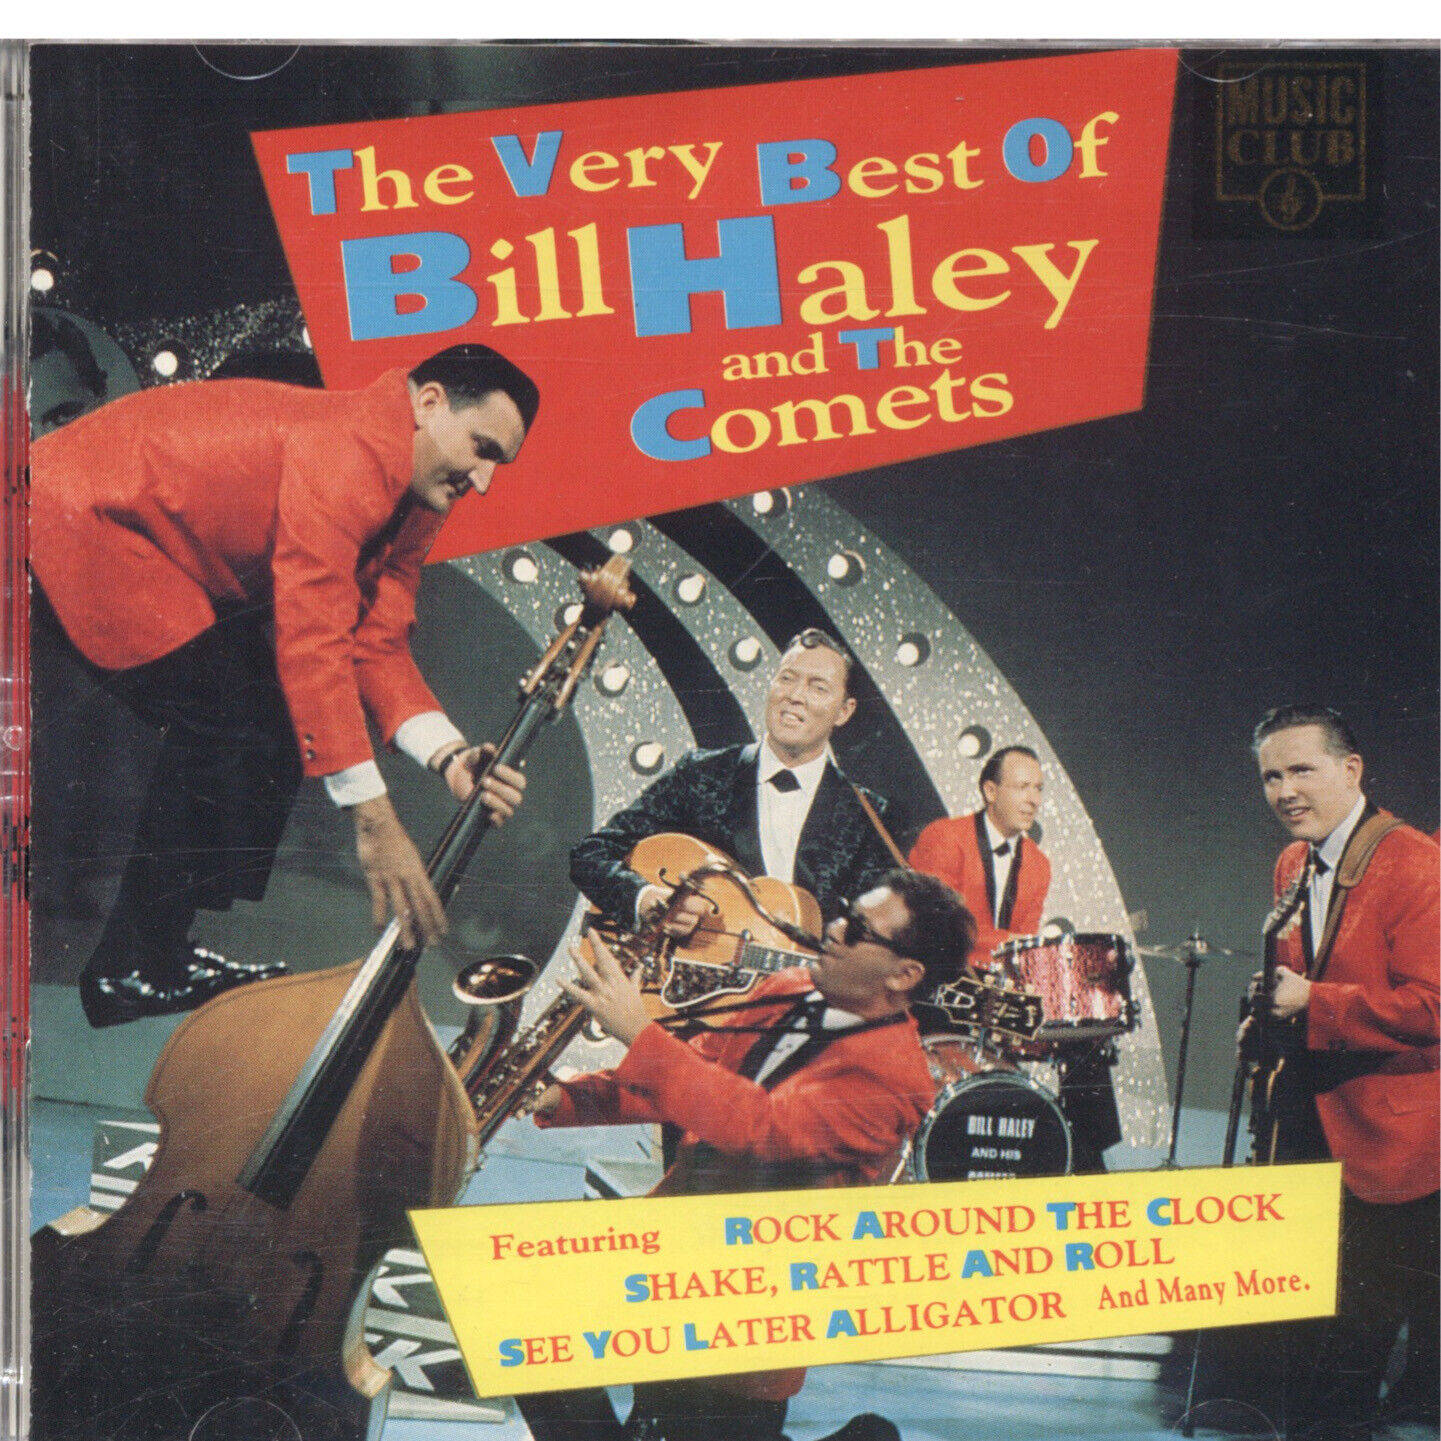 Dasallerbeste Album Von Bill Haley And The Comets Wallpaper